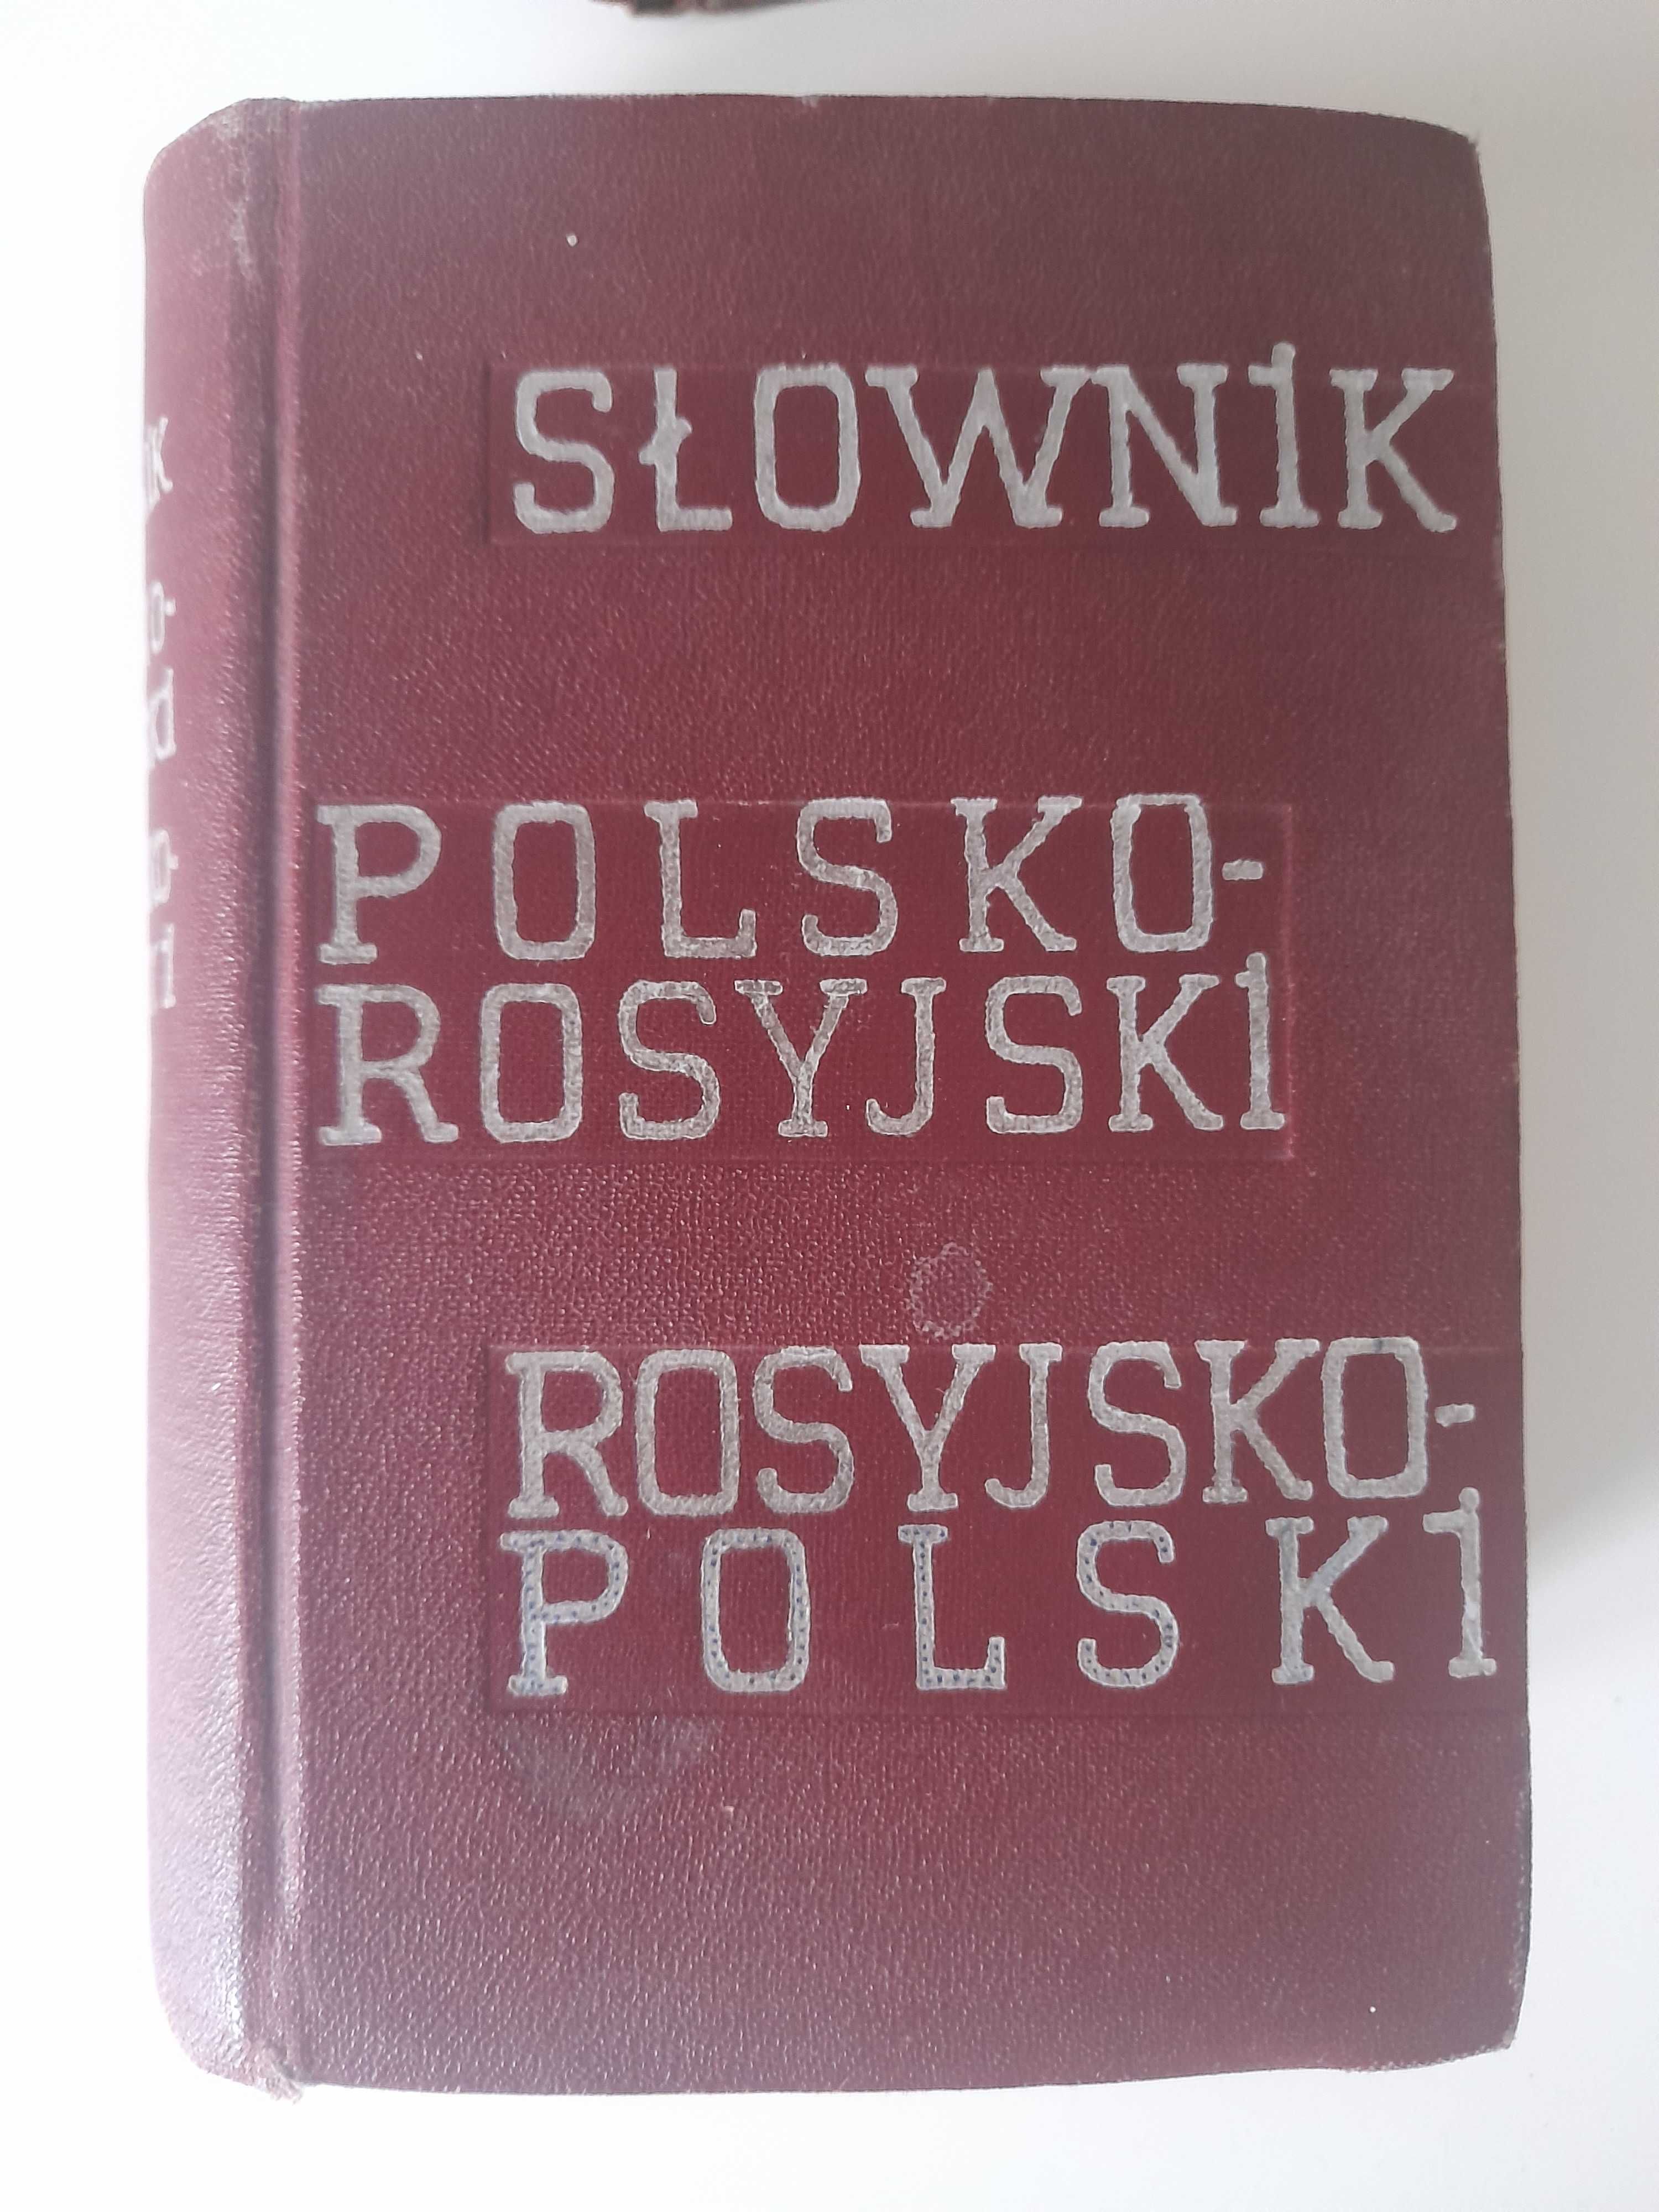 Słownik mechaniczny rosyjsko-polski Okołow i inni + gratis